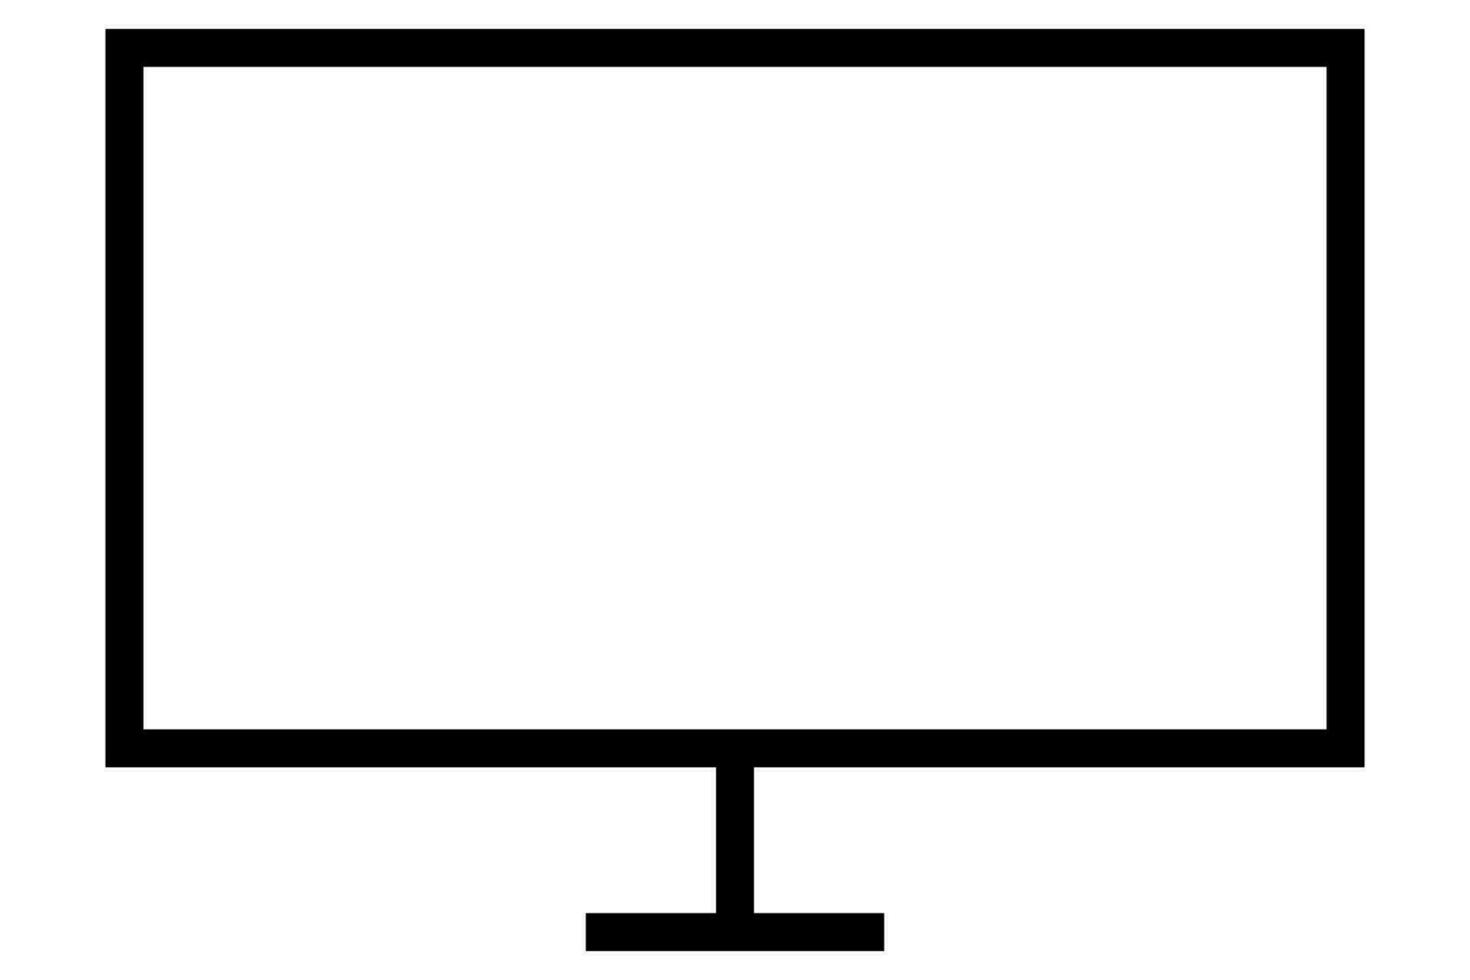 Fernseher Symbol. retro Fernsehen Symbol im schwarz. vektor